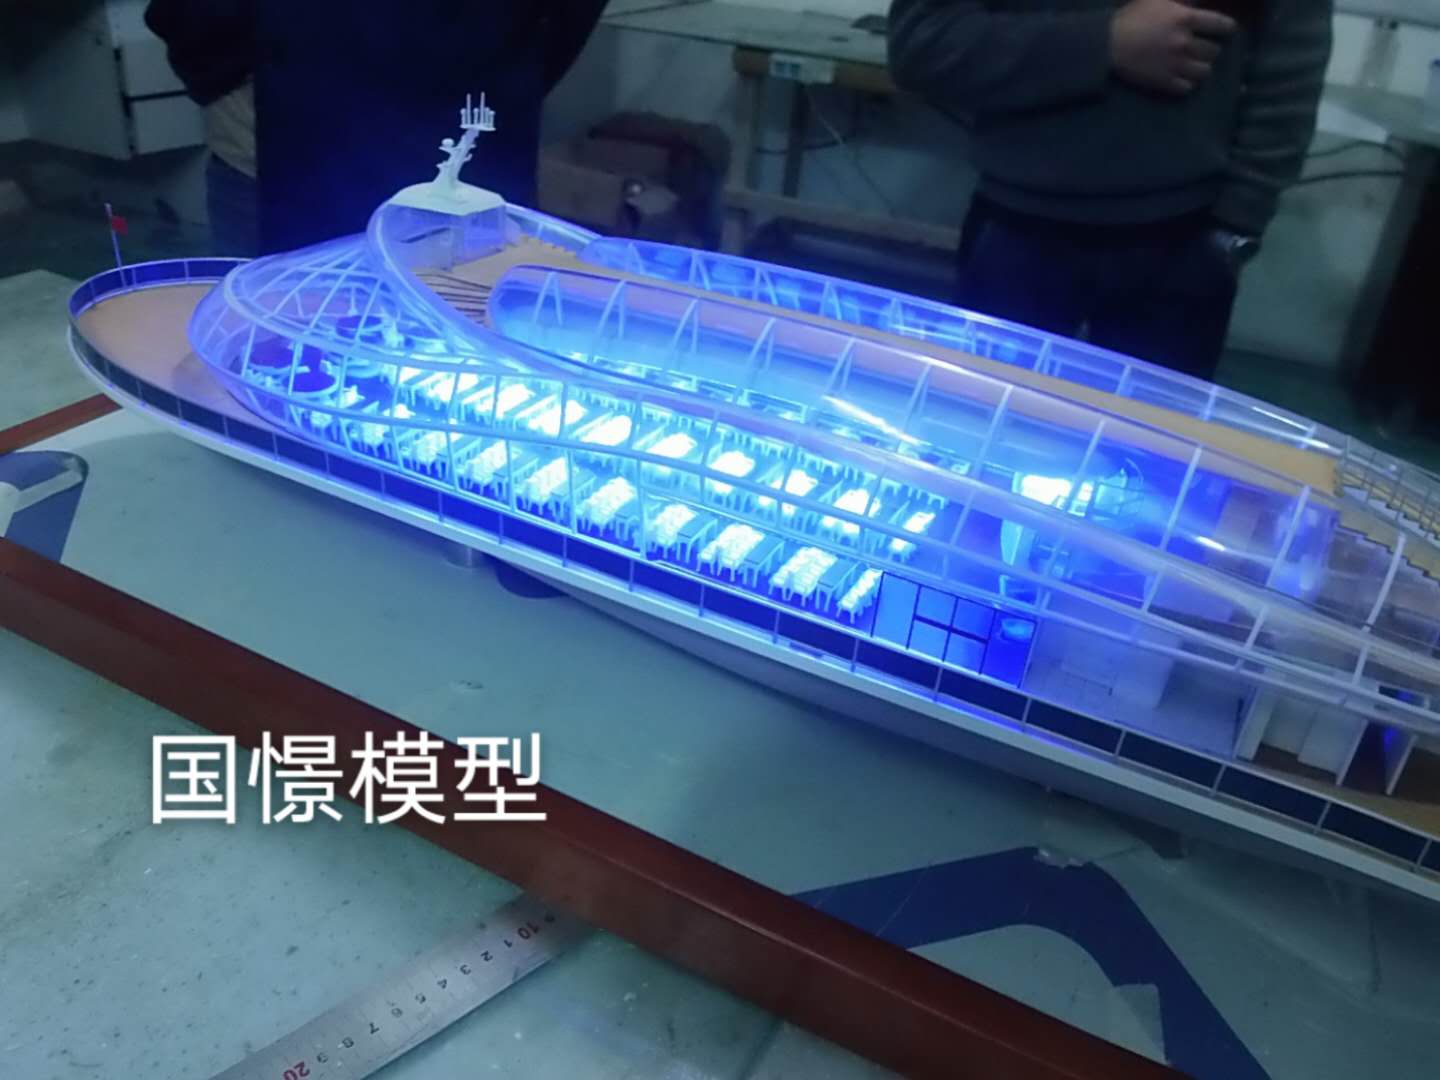 同江县船舶模型